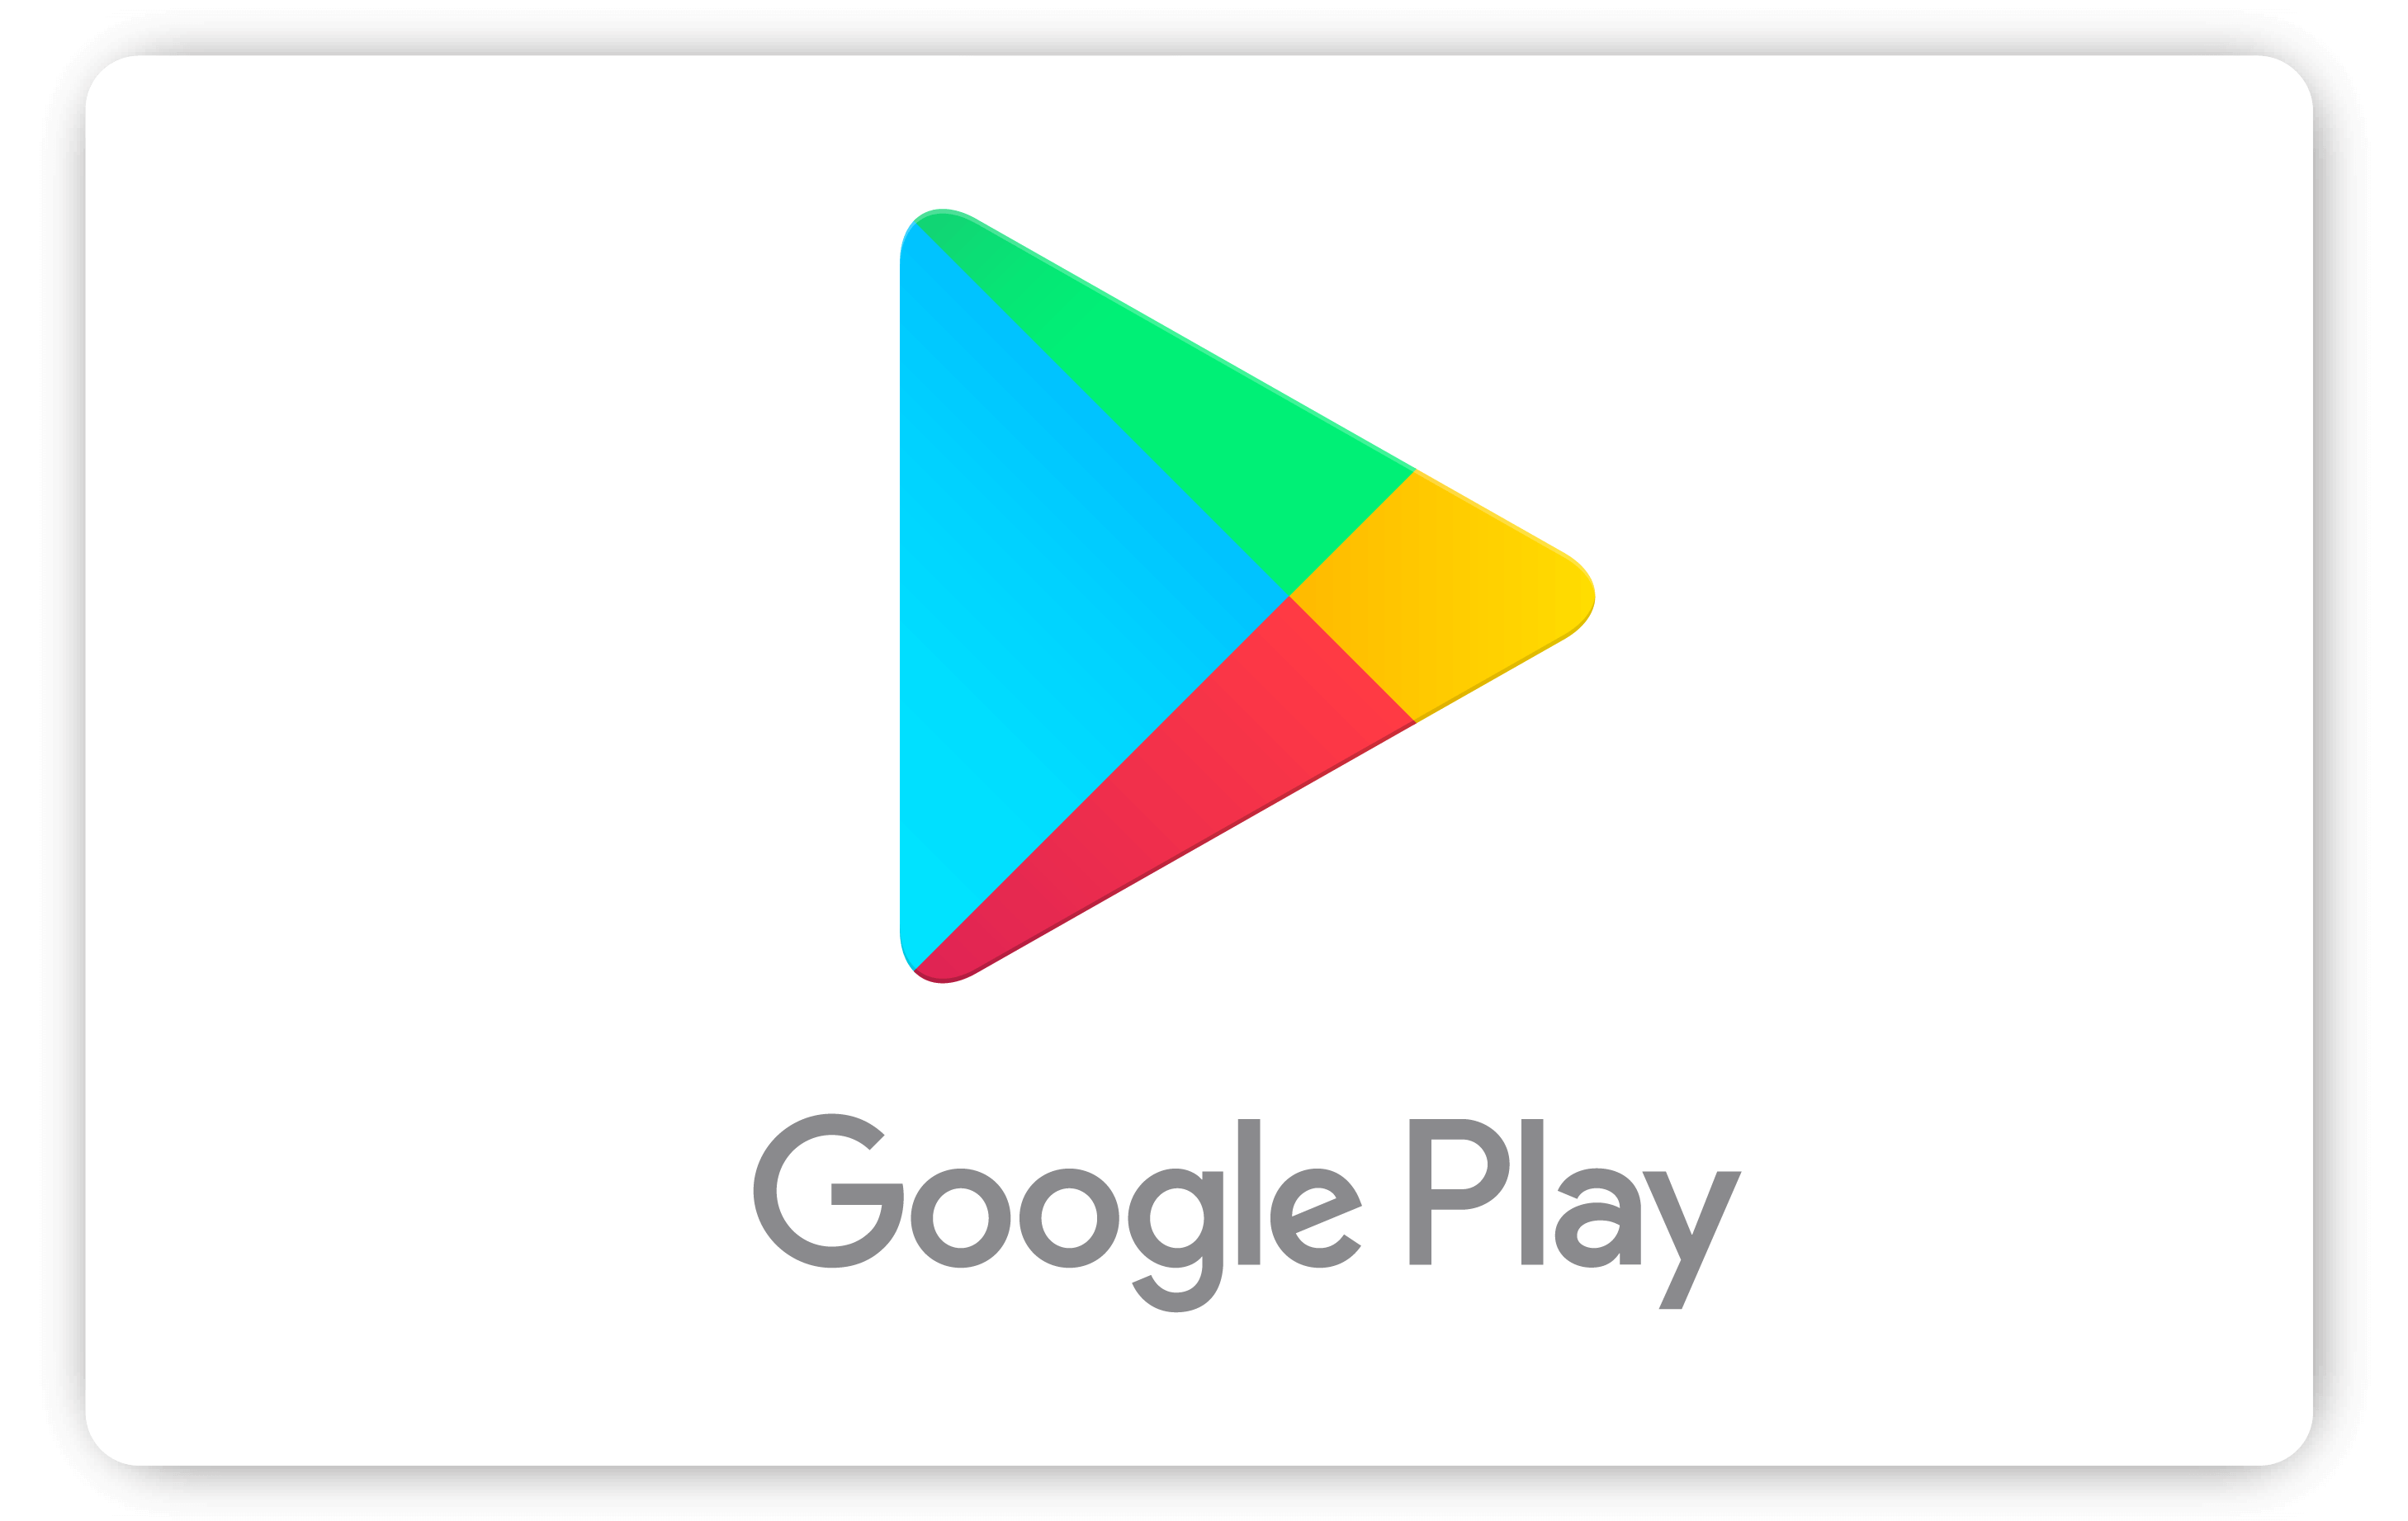 Mejores apps y juegos del 2022 según Google